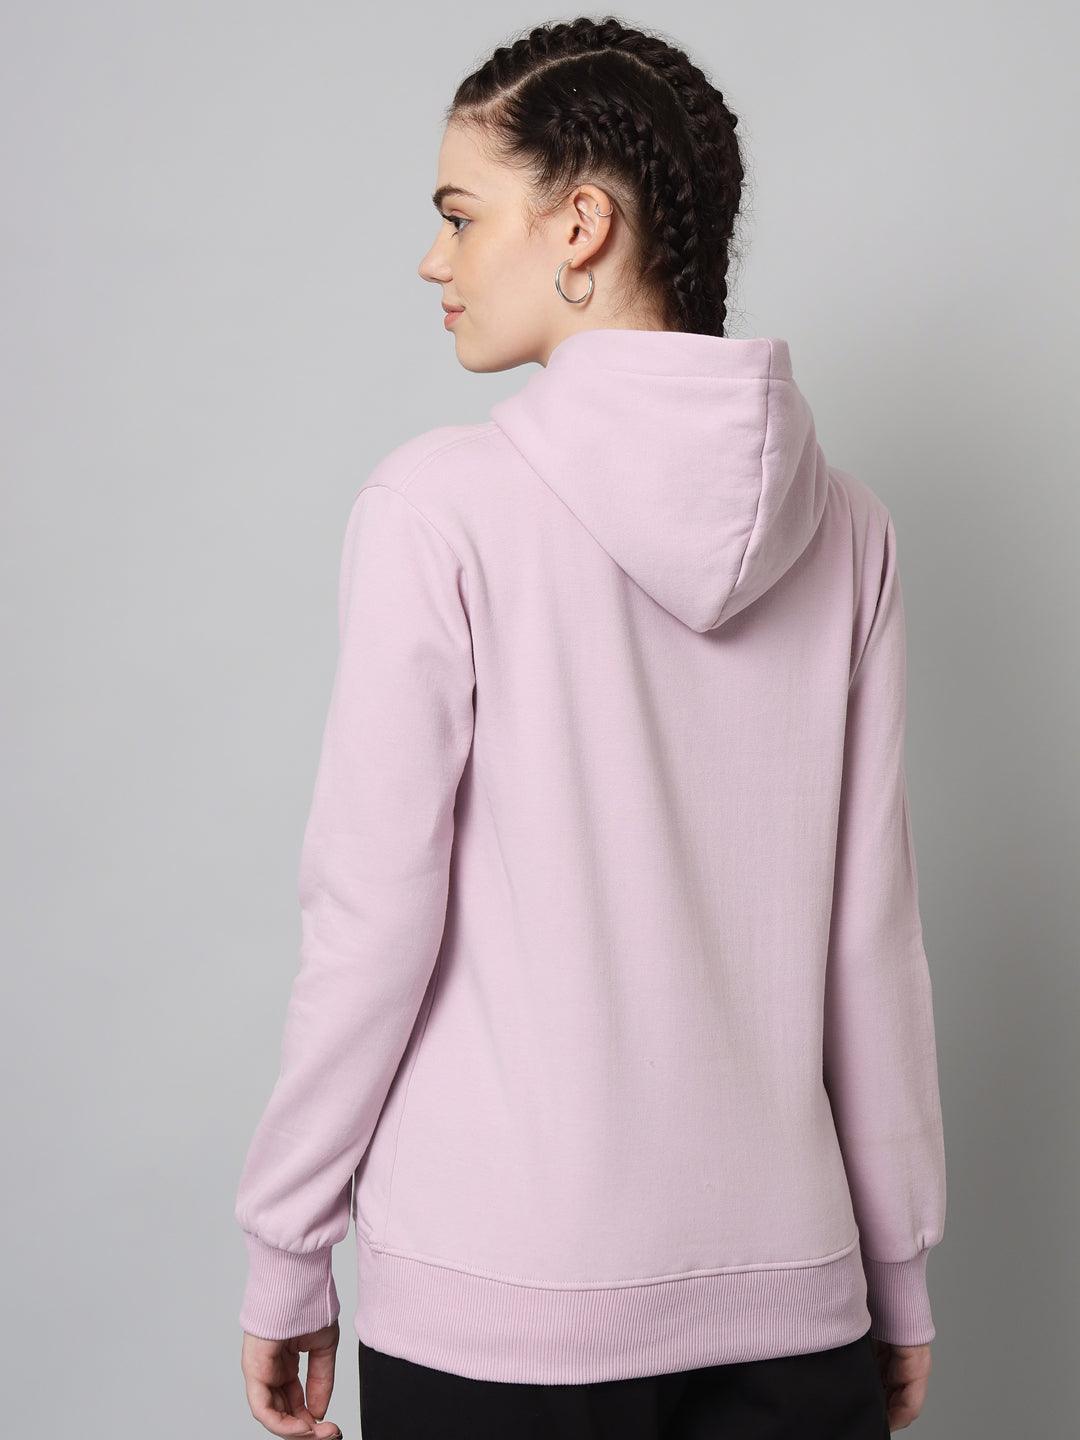 Griffel Women’s Cotton Fleece Full Sleeve Light Purple Hoodie Sweatshirt - griffel